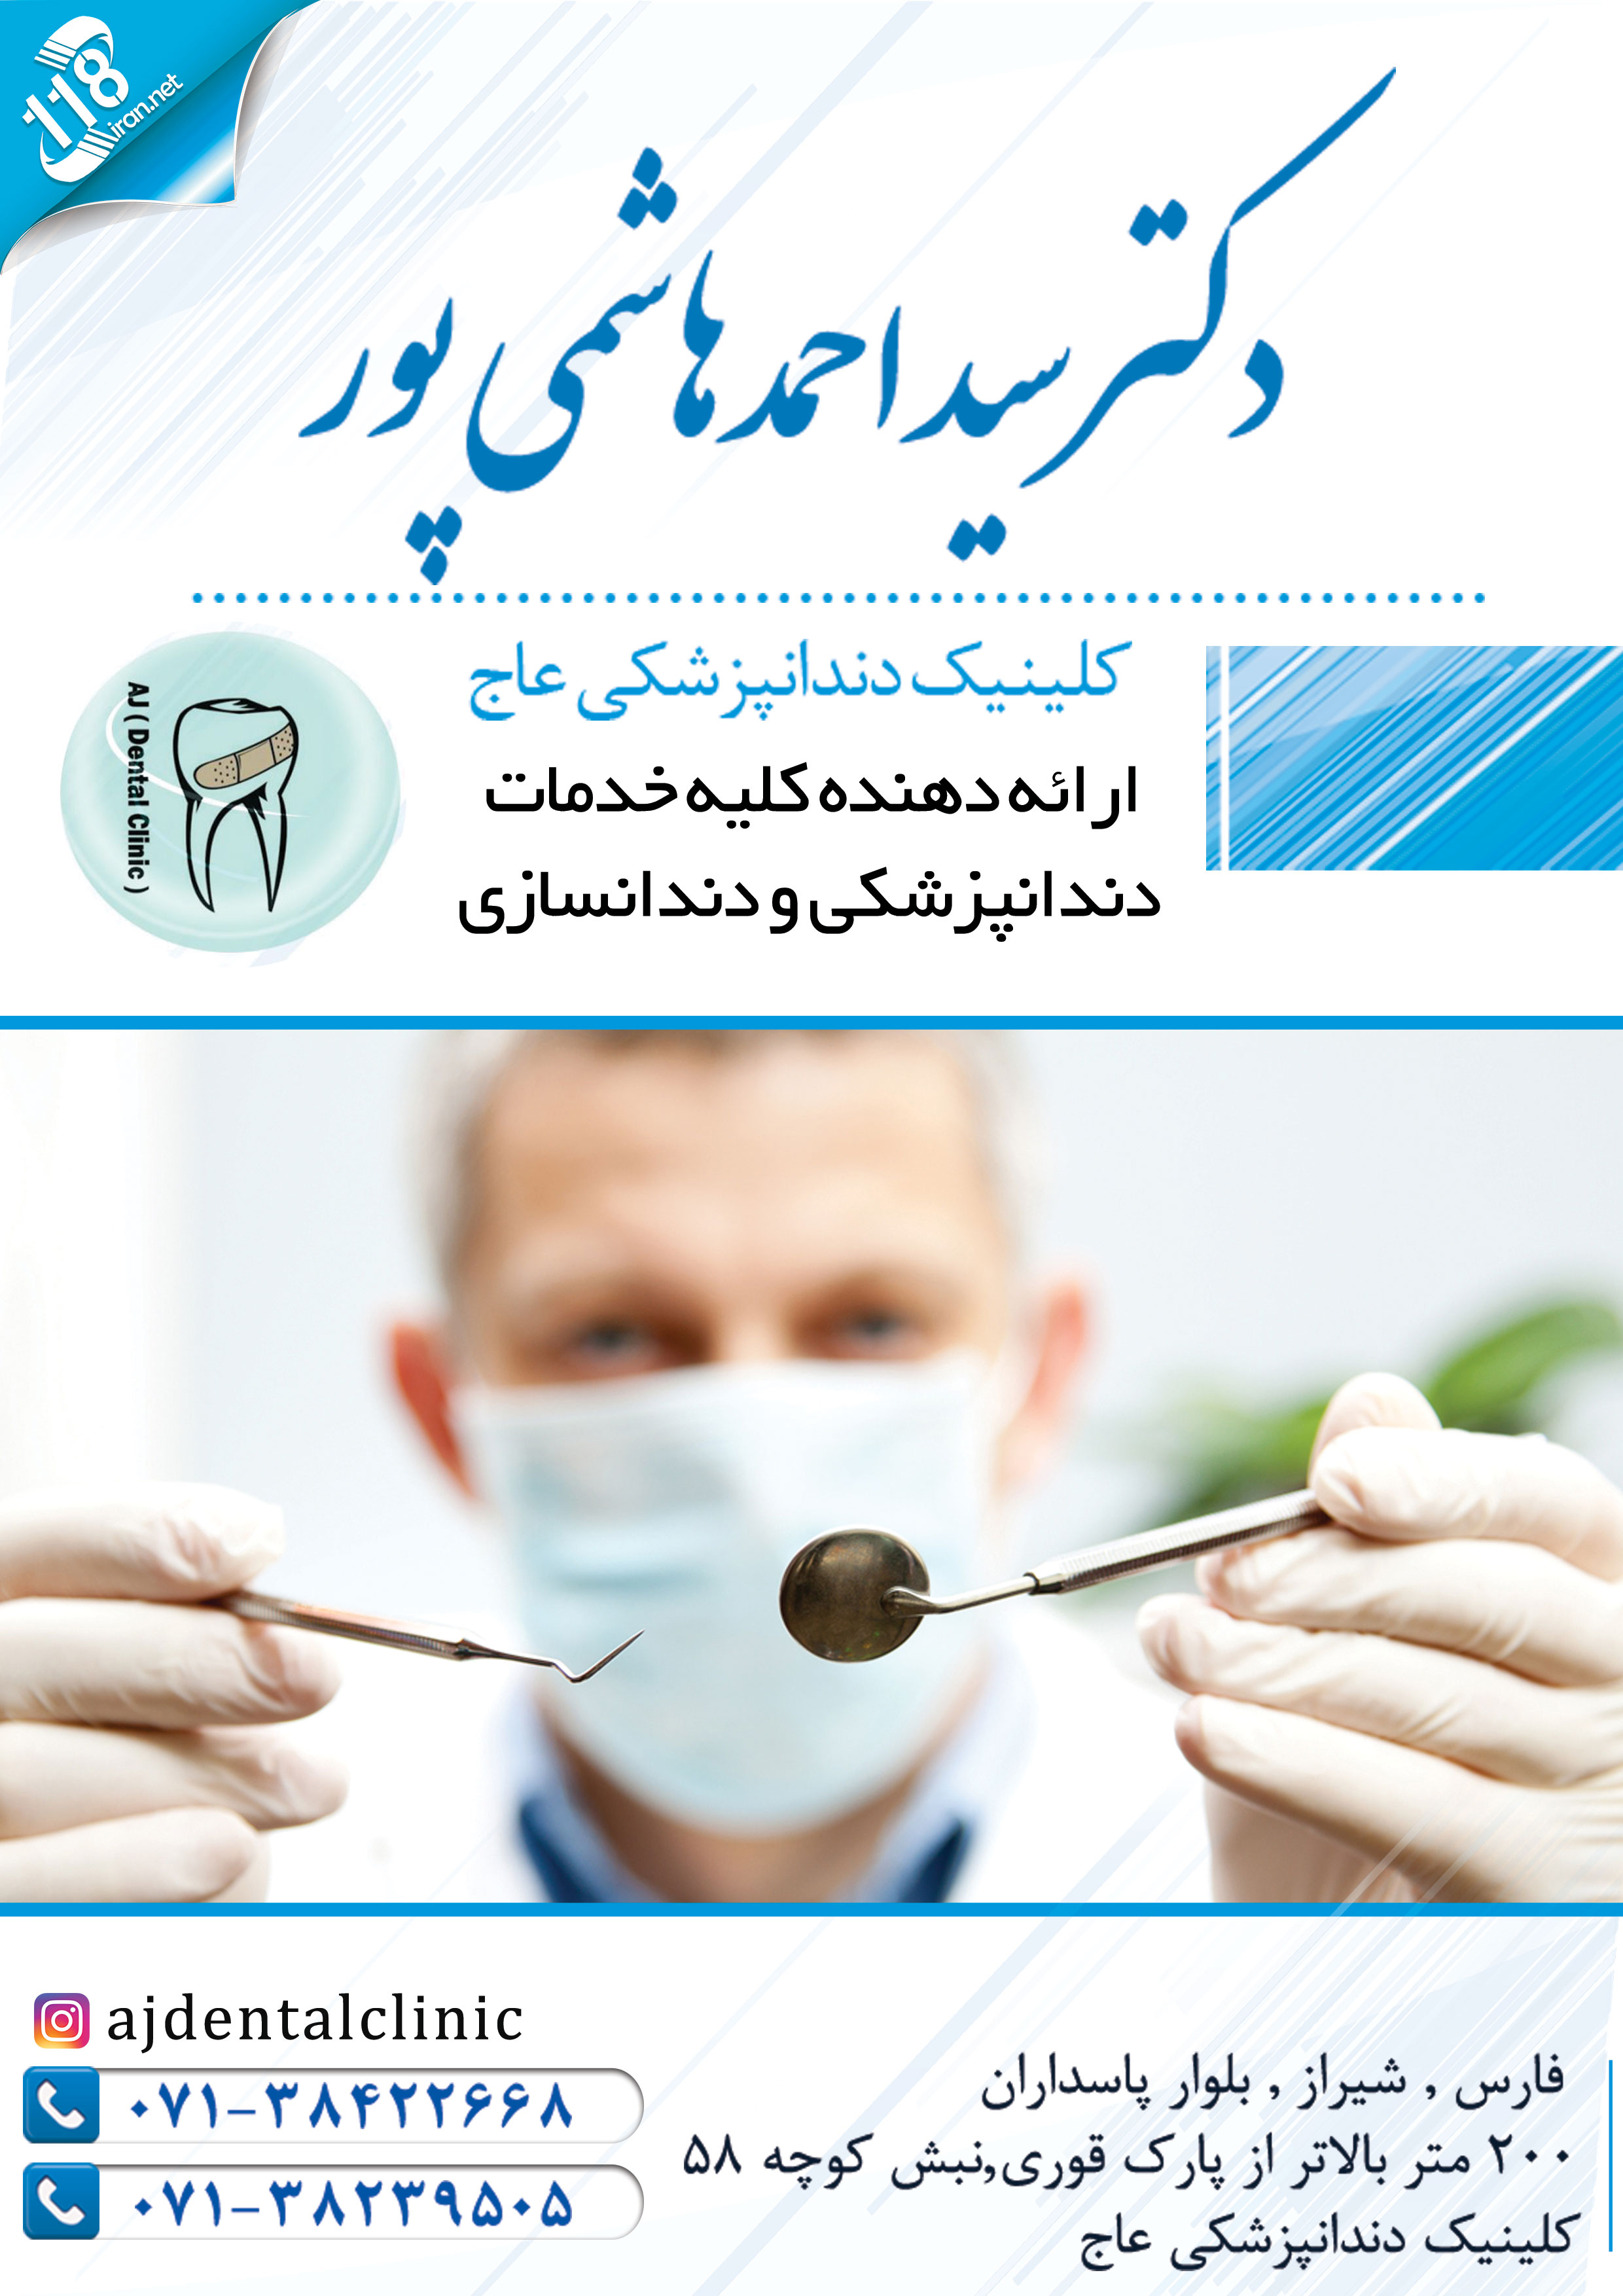  کلینیک عاج دکتر سید احمد هاشمی پور در شیراز 